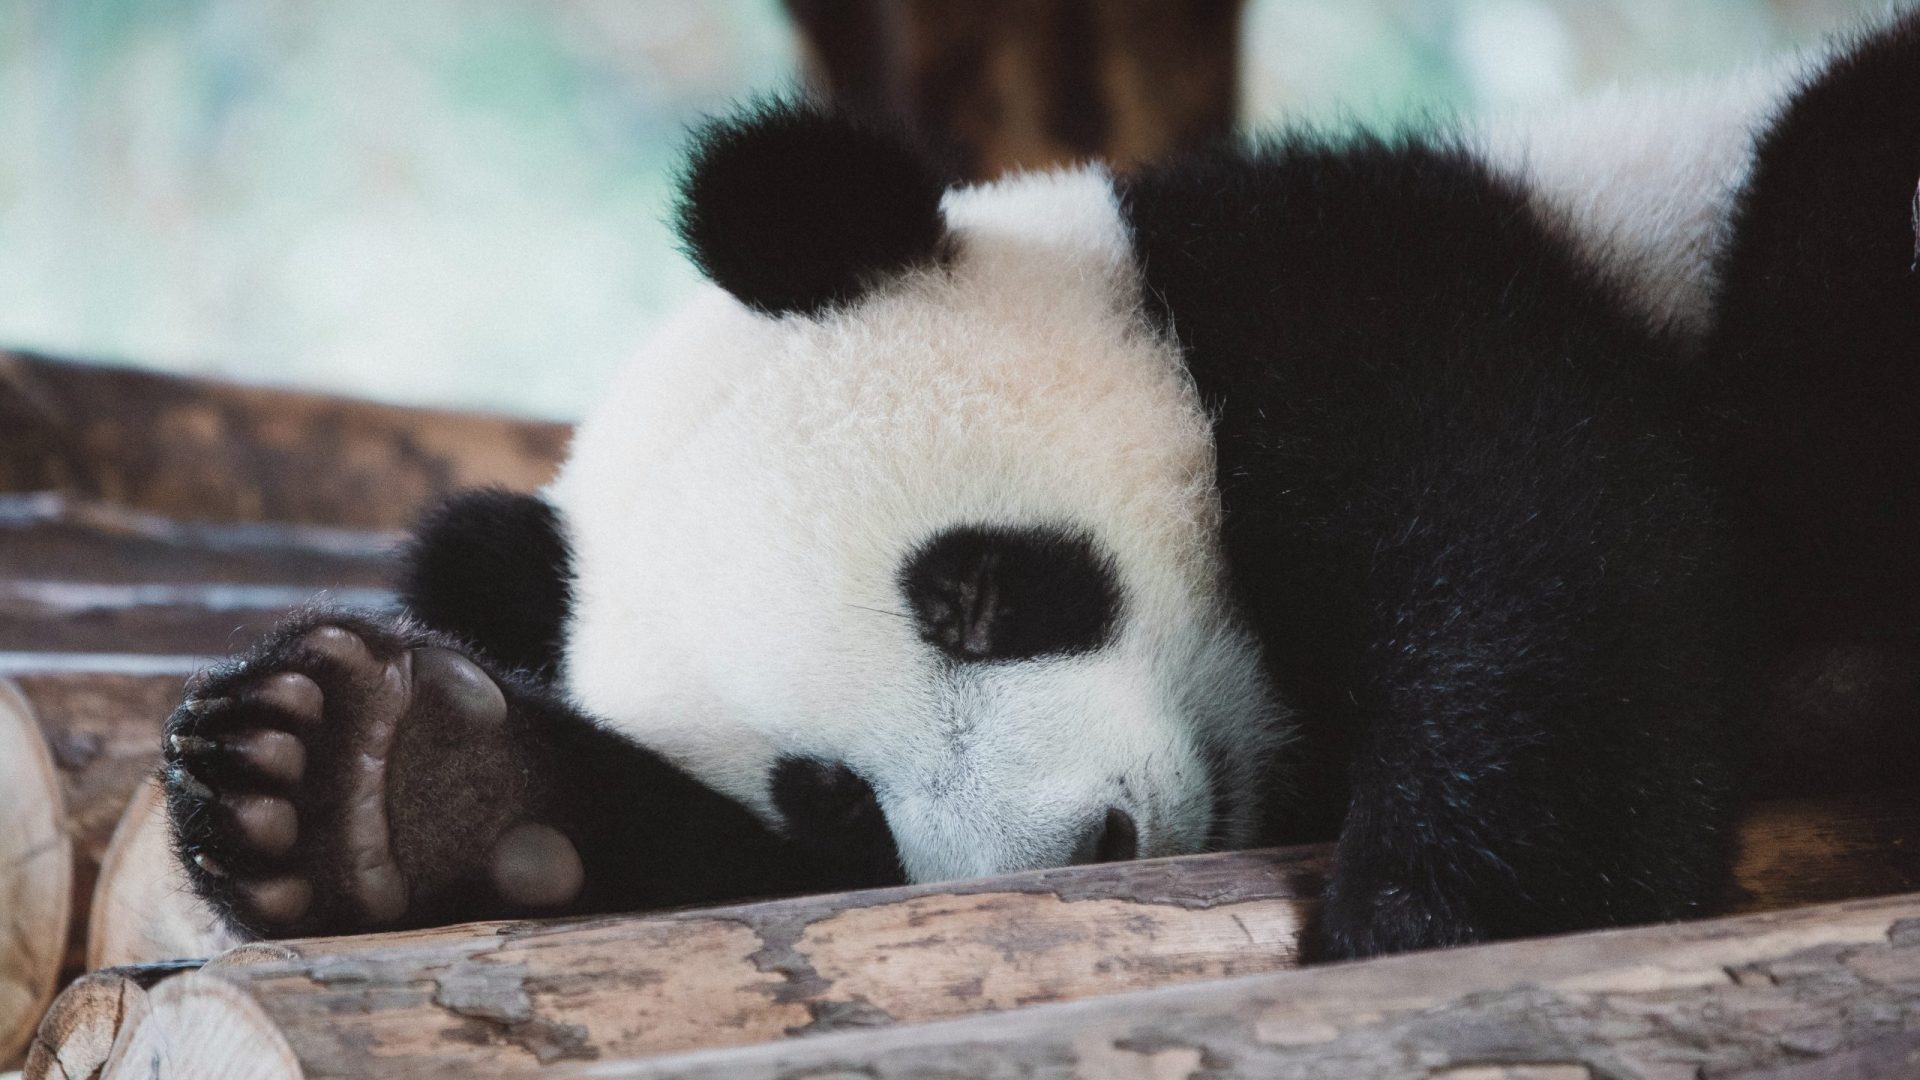 Panda-monium as China’s cutest diplomats head home